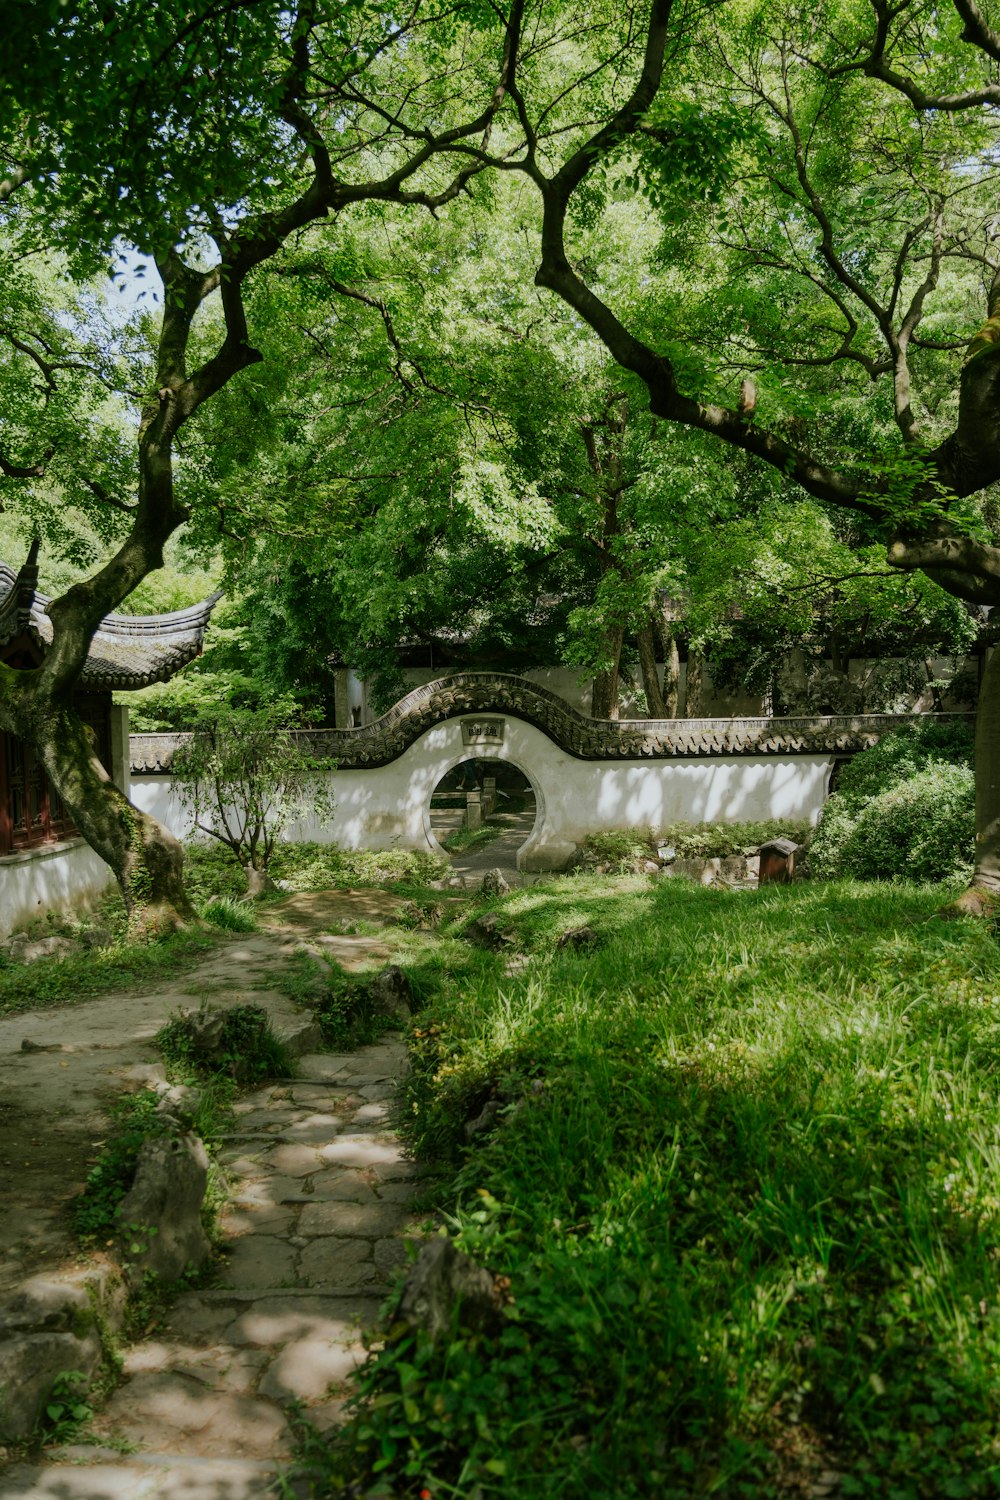 a stone path through a lush green park